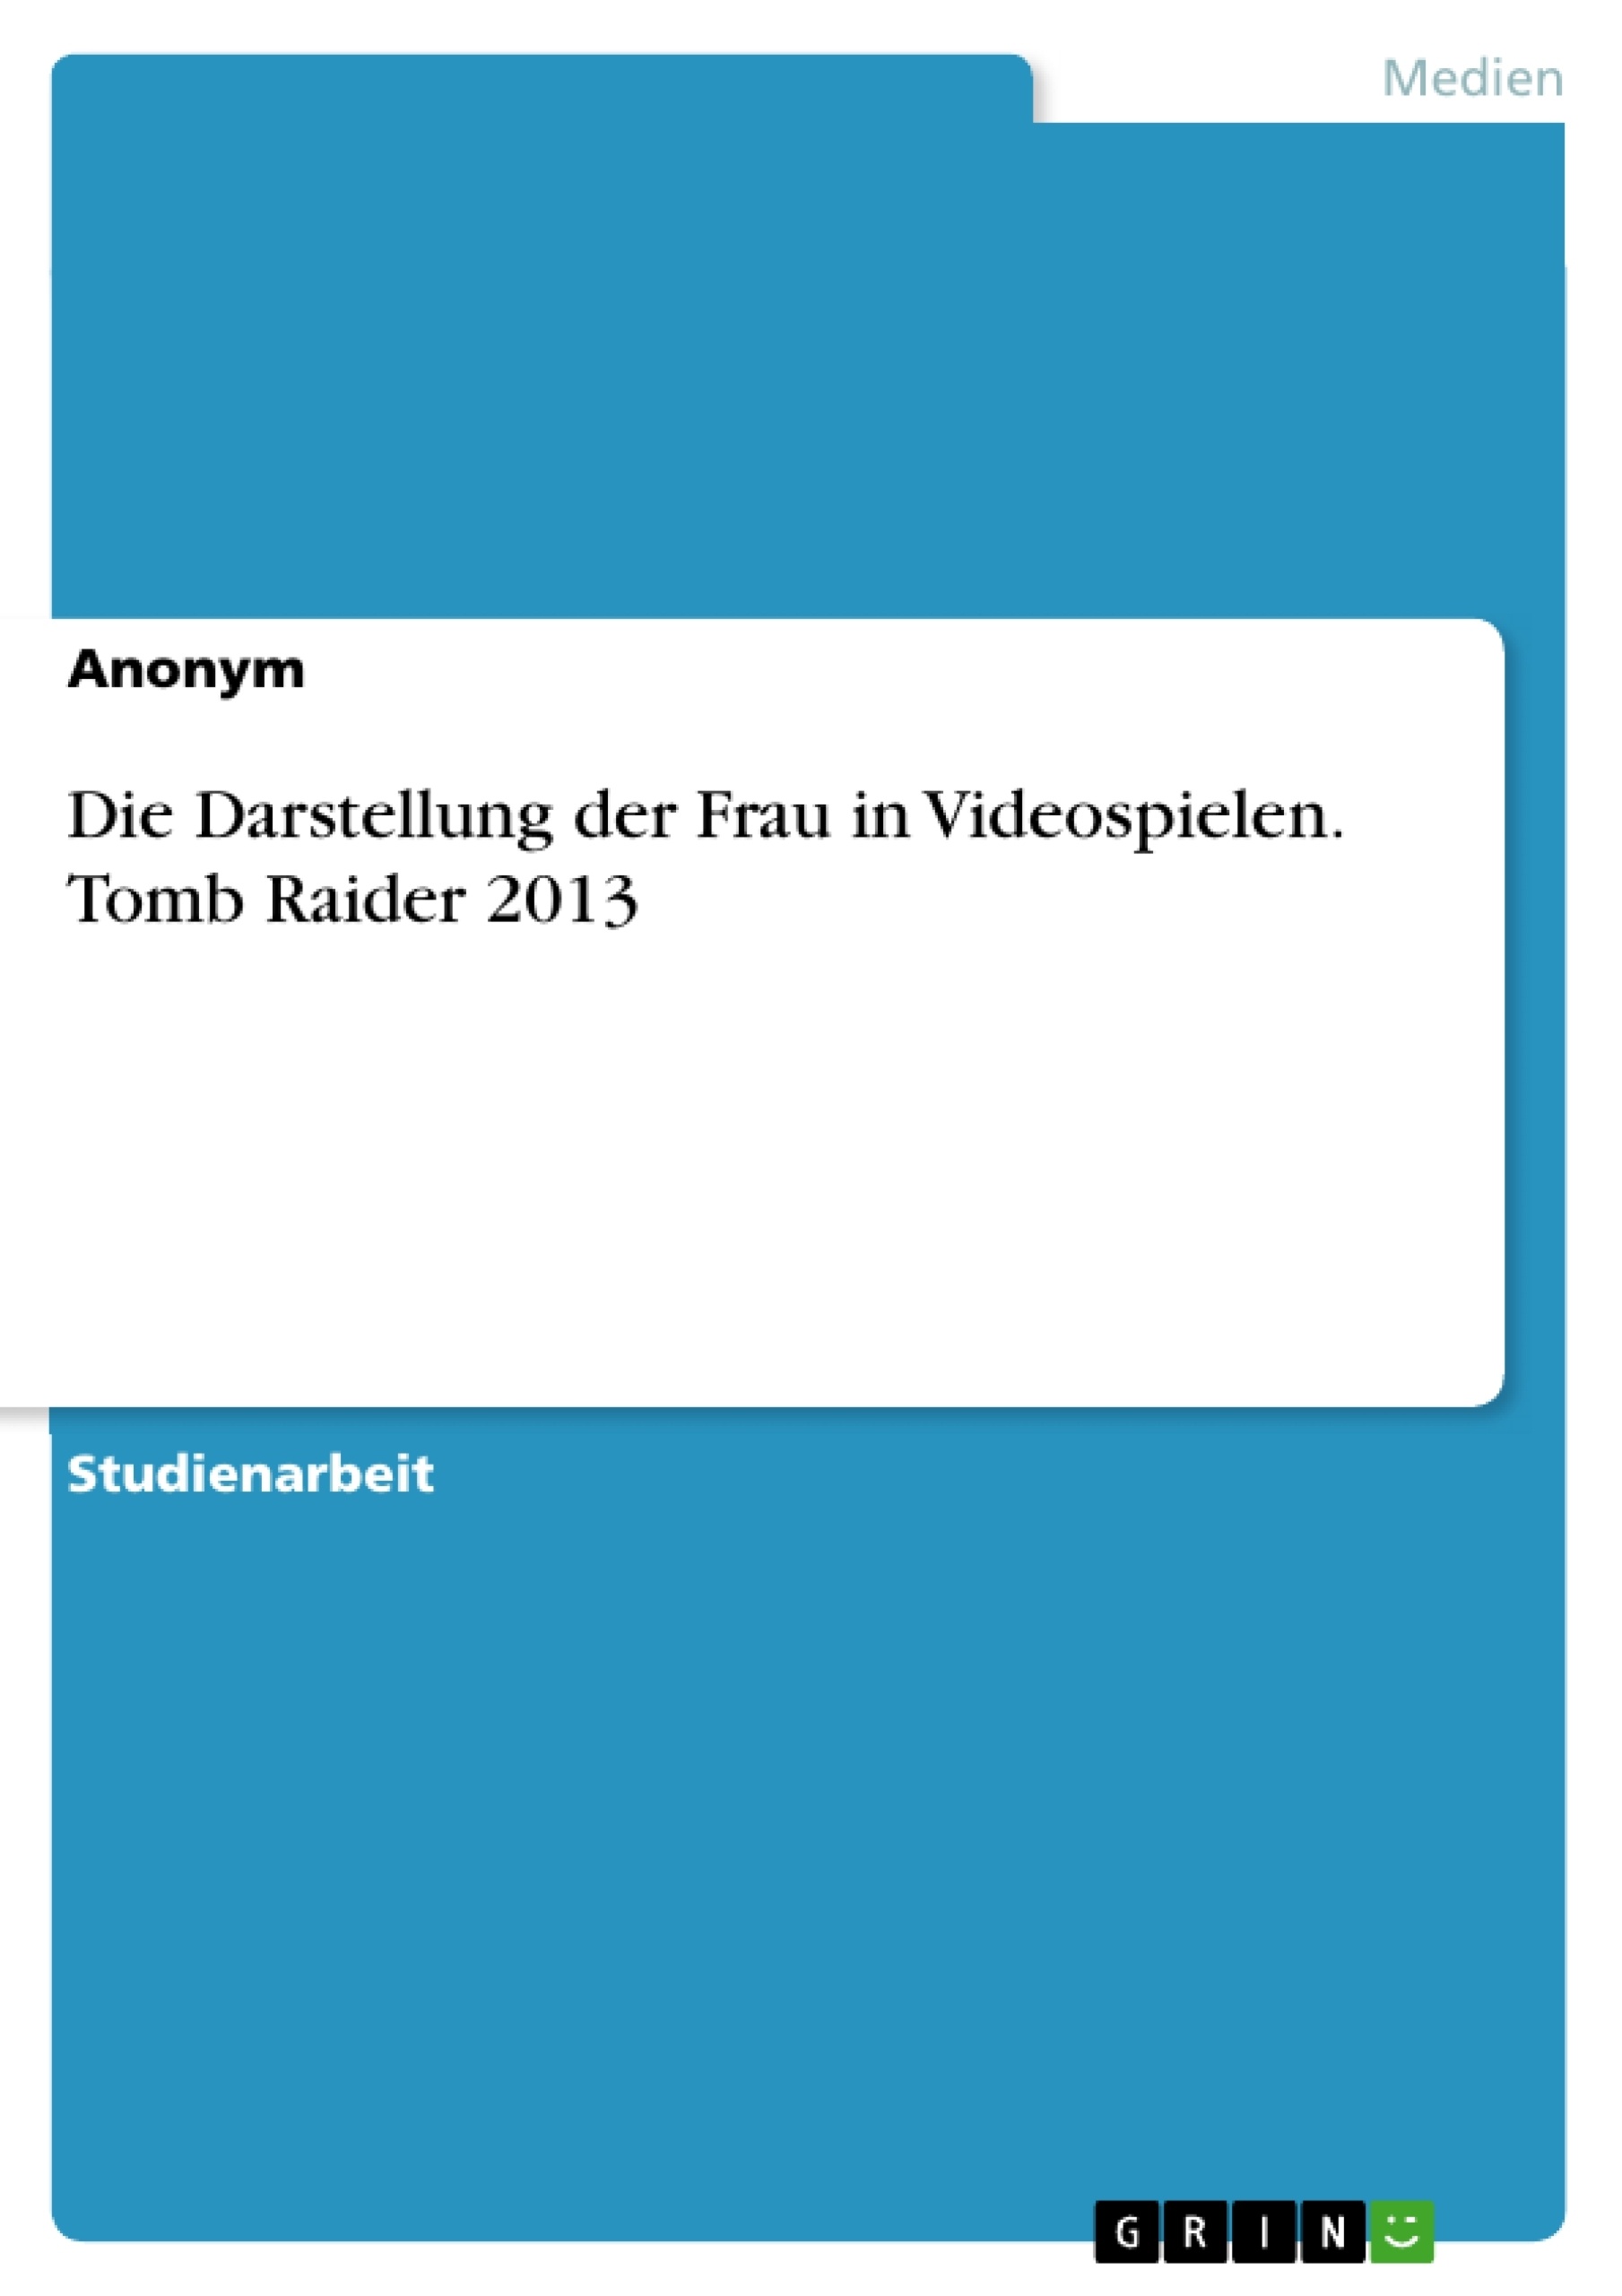 Title: Die Darstellung der Frau in Videospielen. Tomb Raider 2013